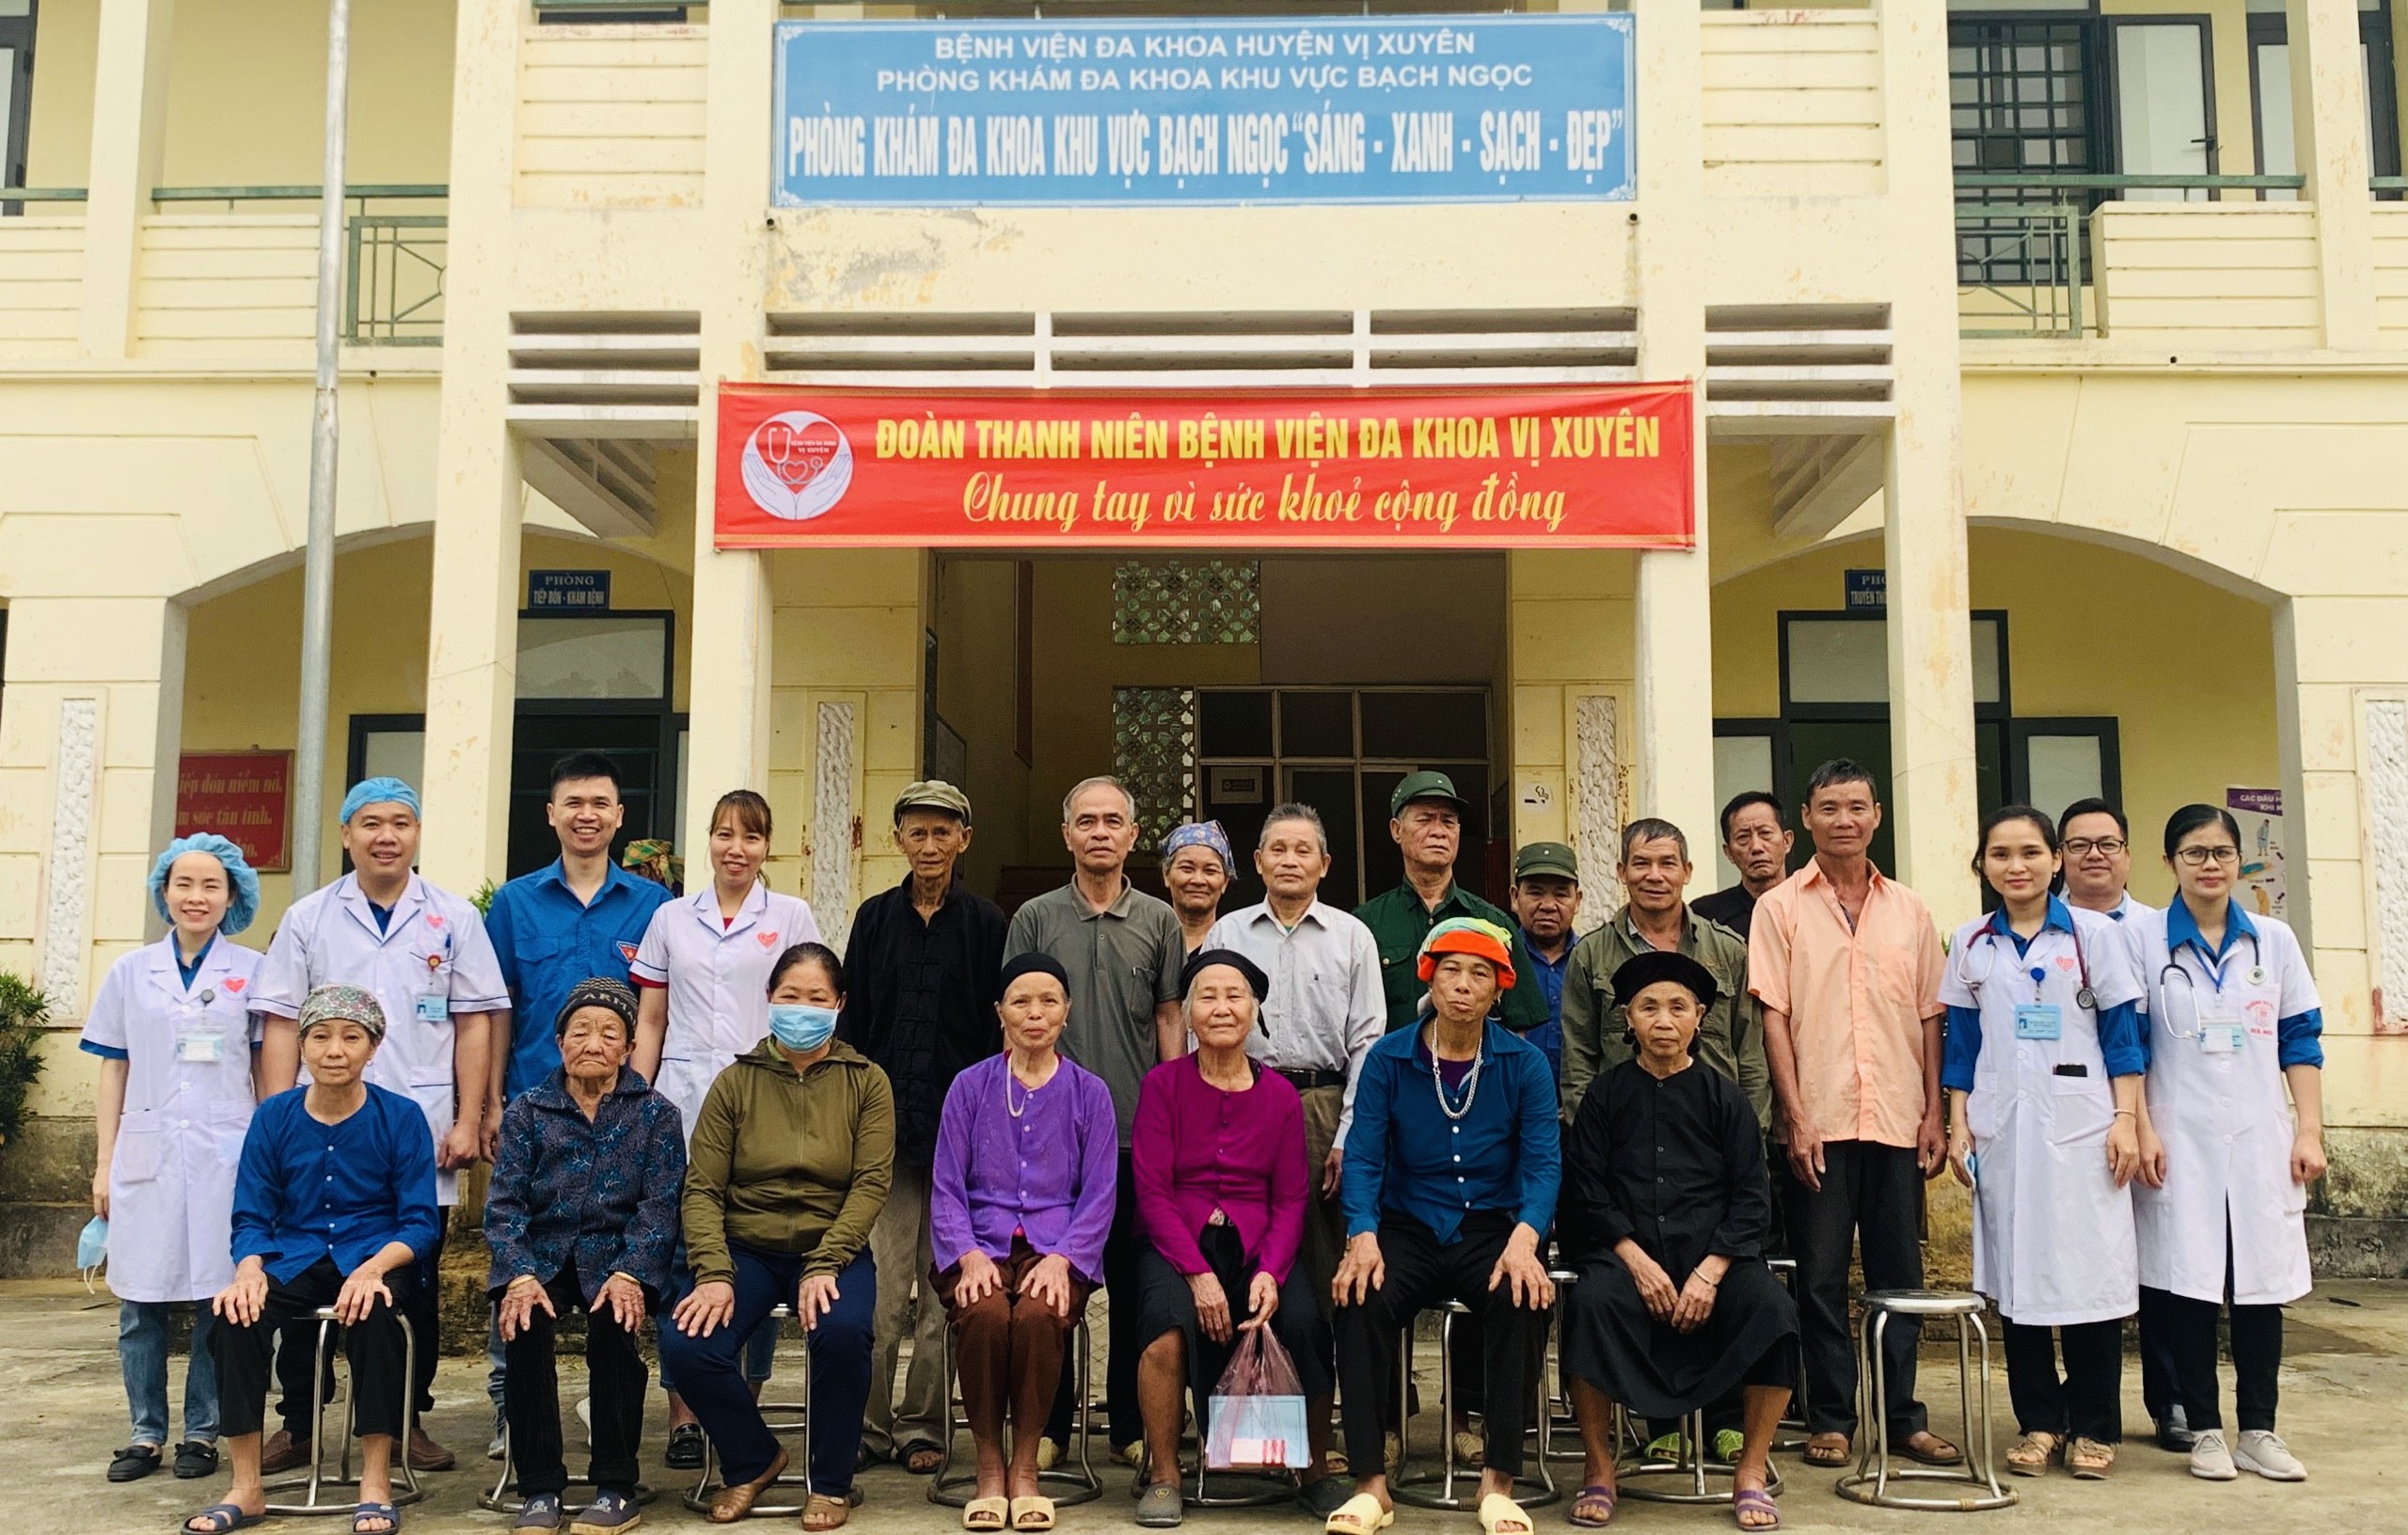 Đoàn thanh niên Bệnh viện Đa khoa huyện Vị Xuyên khám, phát thuốc miễn phí cho người dân